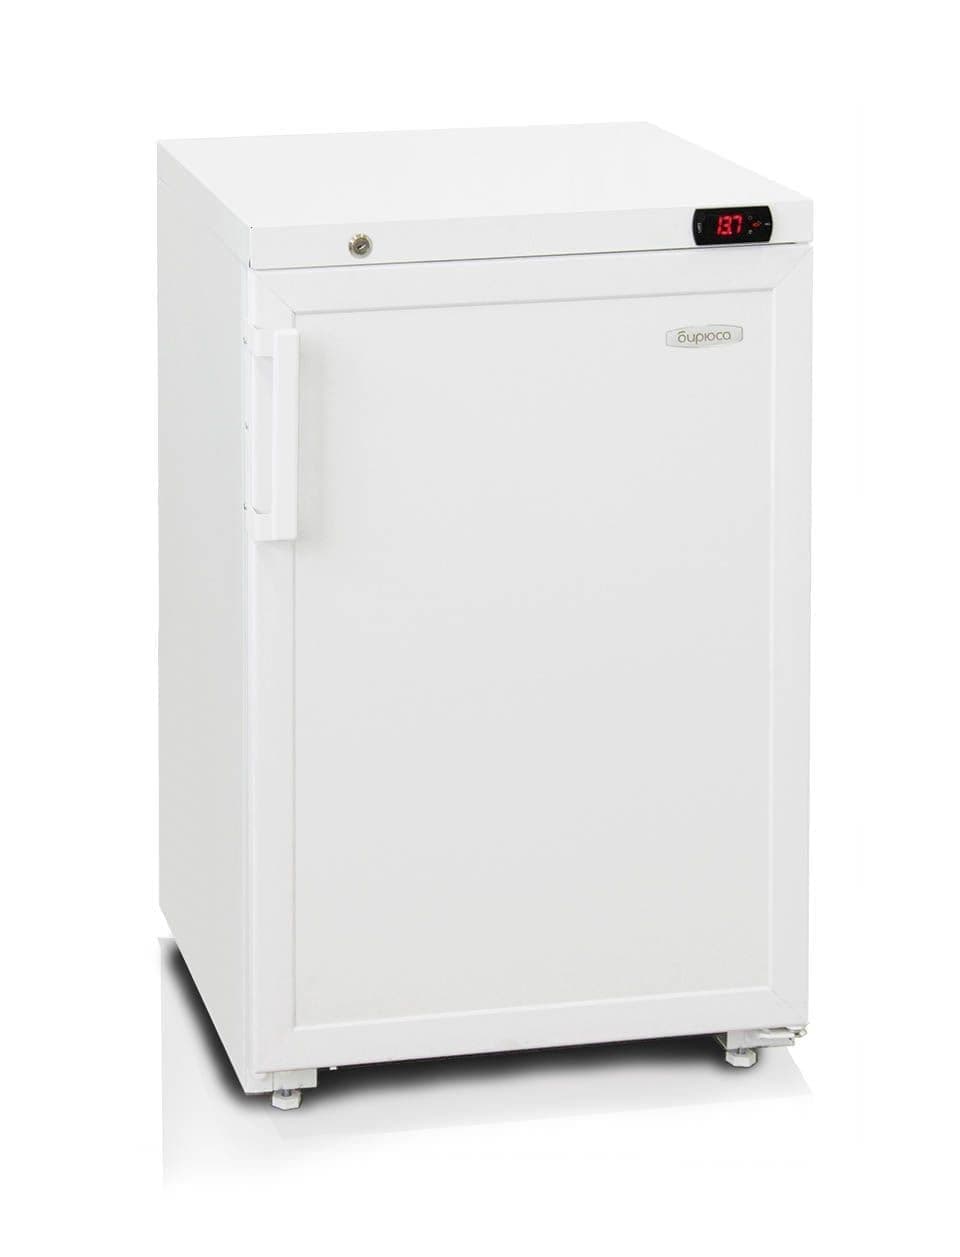 Шкаф холодильный фармацевтический Бирюса 150K-G (4G)